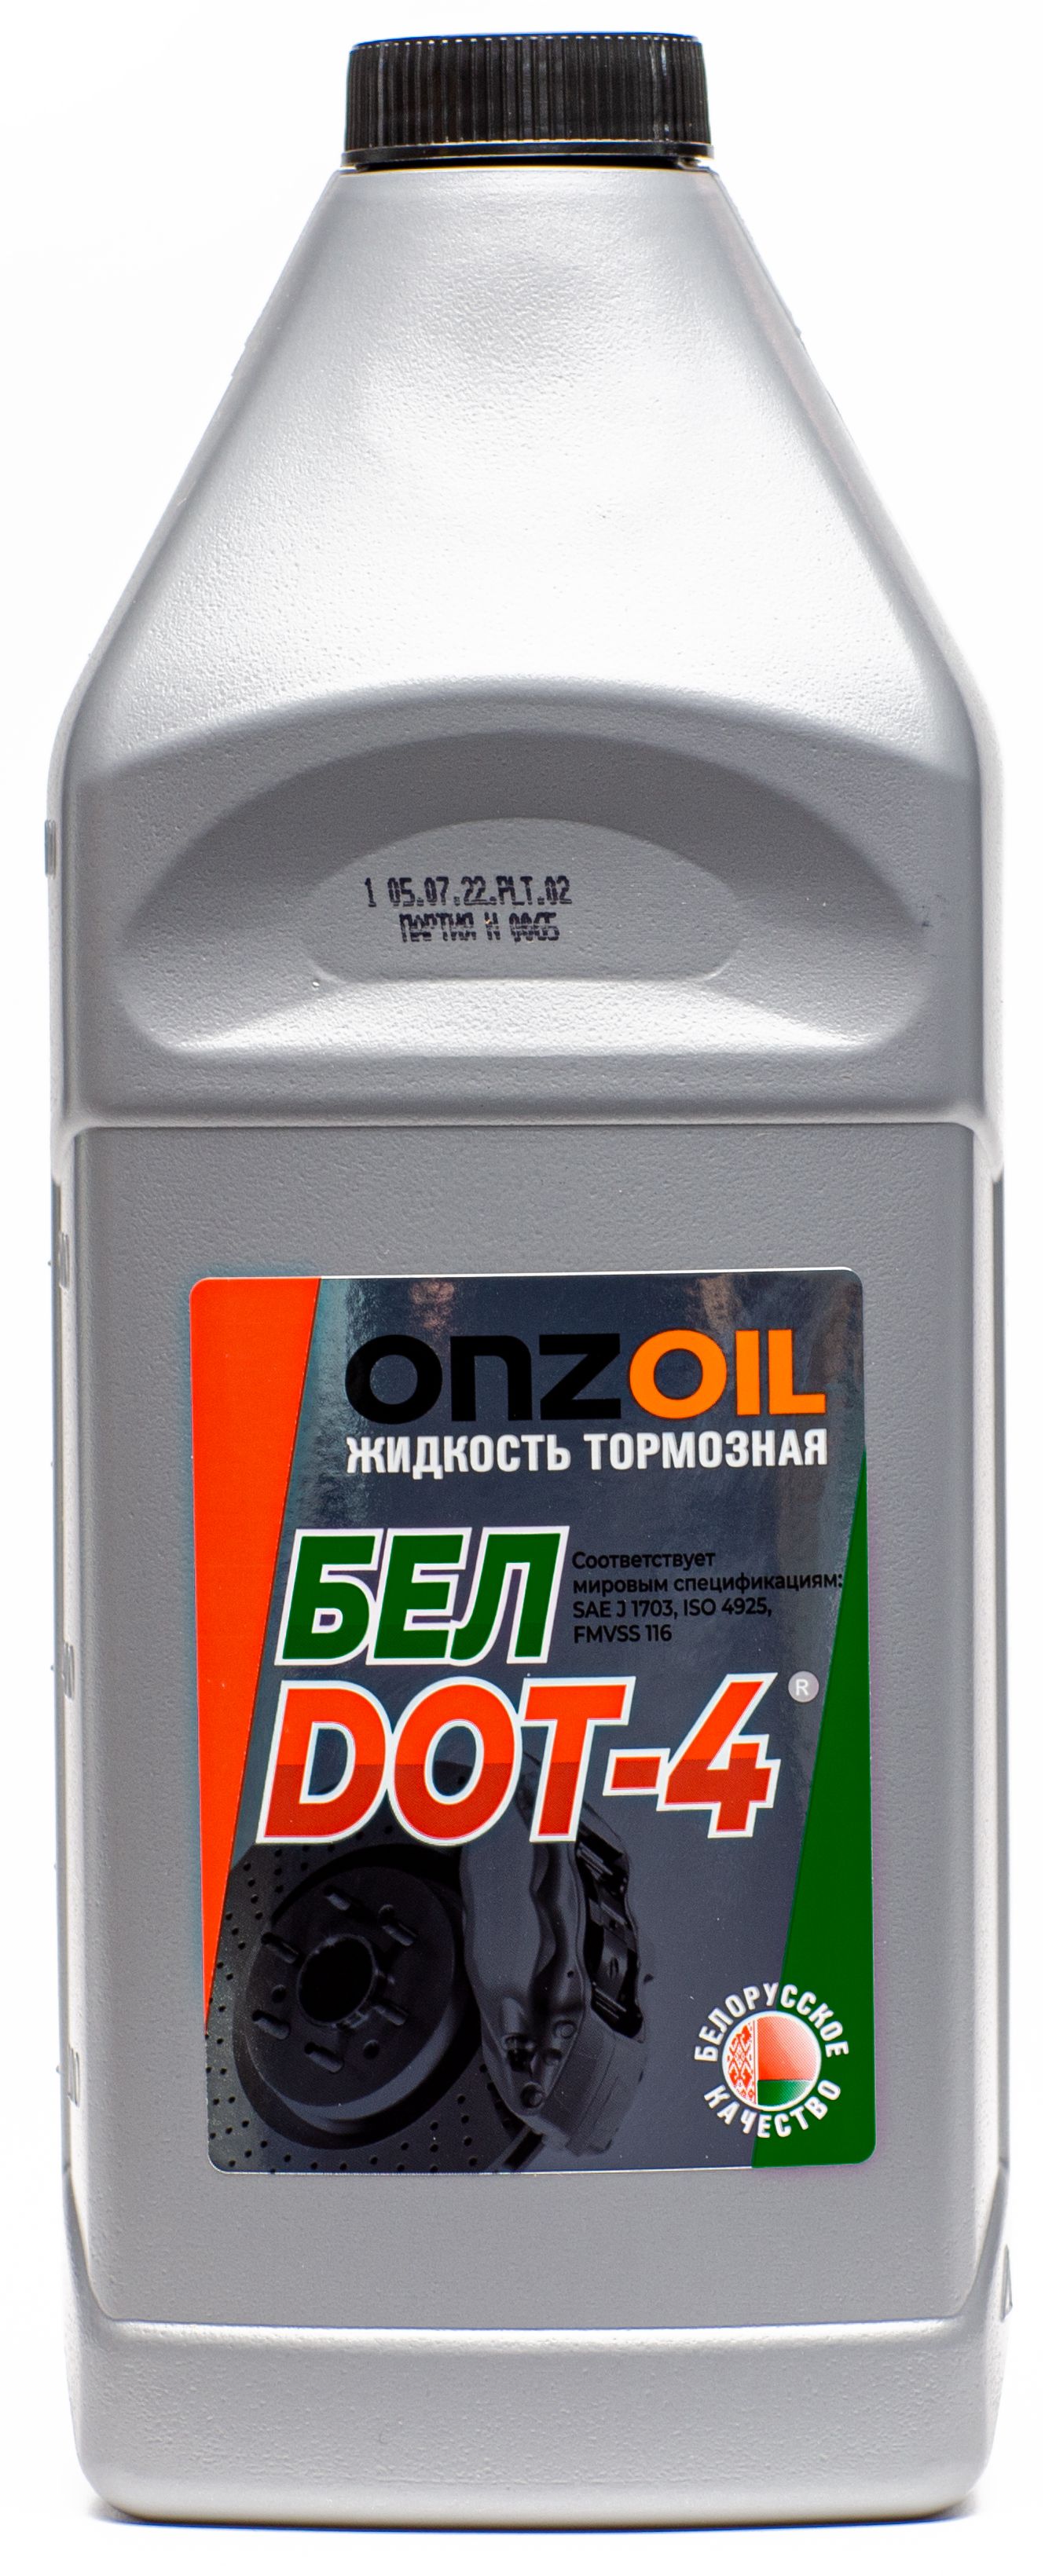 Жидкость тормозная Onzoil БЕЛDOT-4 910 г, 